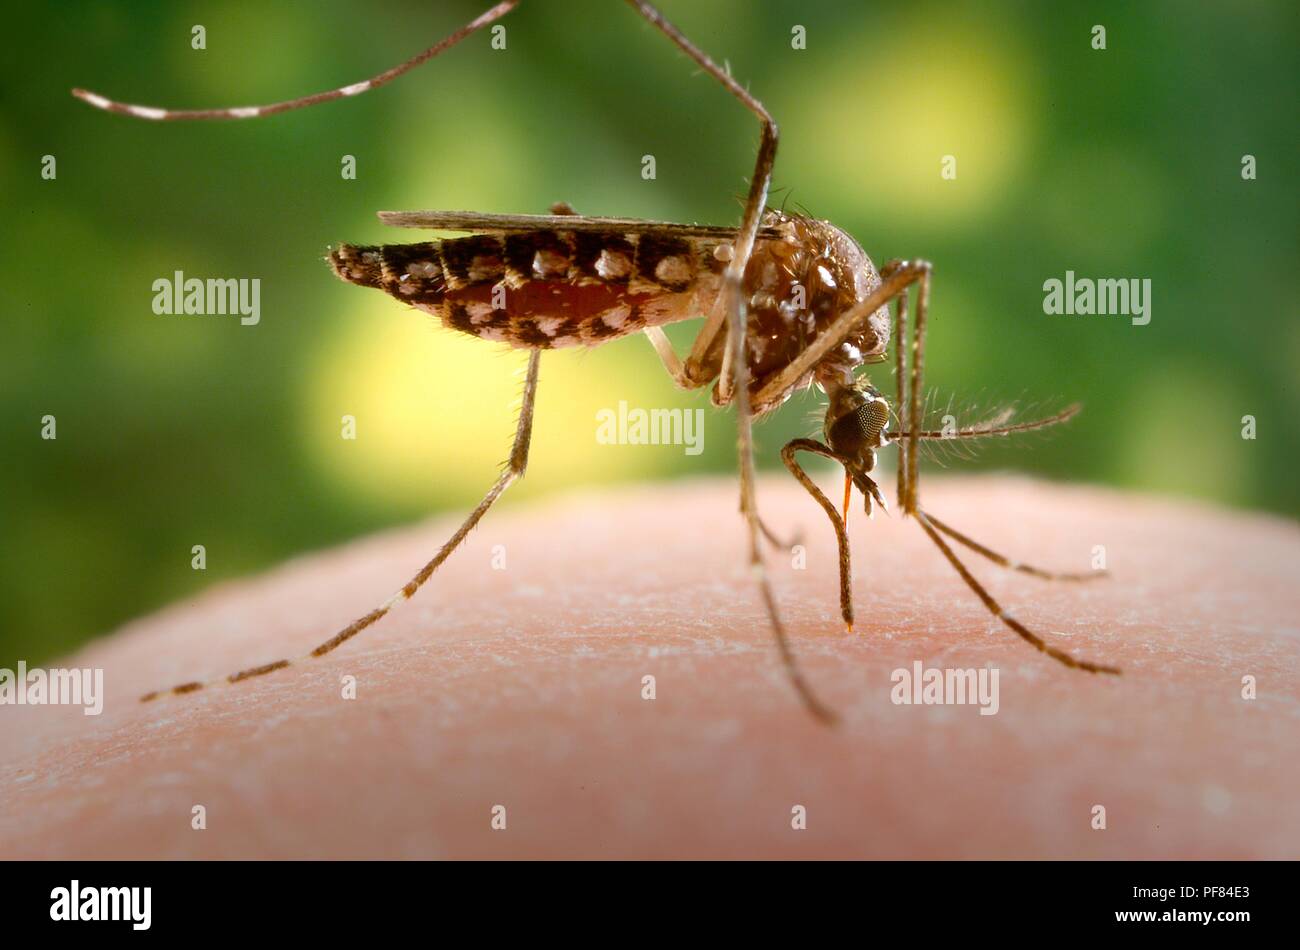 Femmine Aedes aegypti mosquito nel processo di acquisizione di una farina di sangue dal suo ospite umano, 2006. Immagine cortesia di centri per il controllo delle malattie (CDC) / James Gathany. () Foto Stock